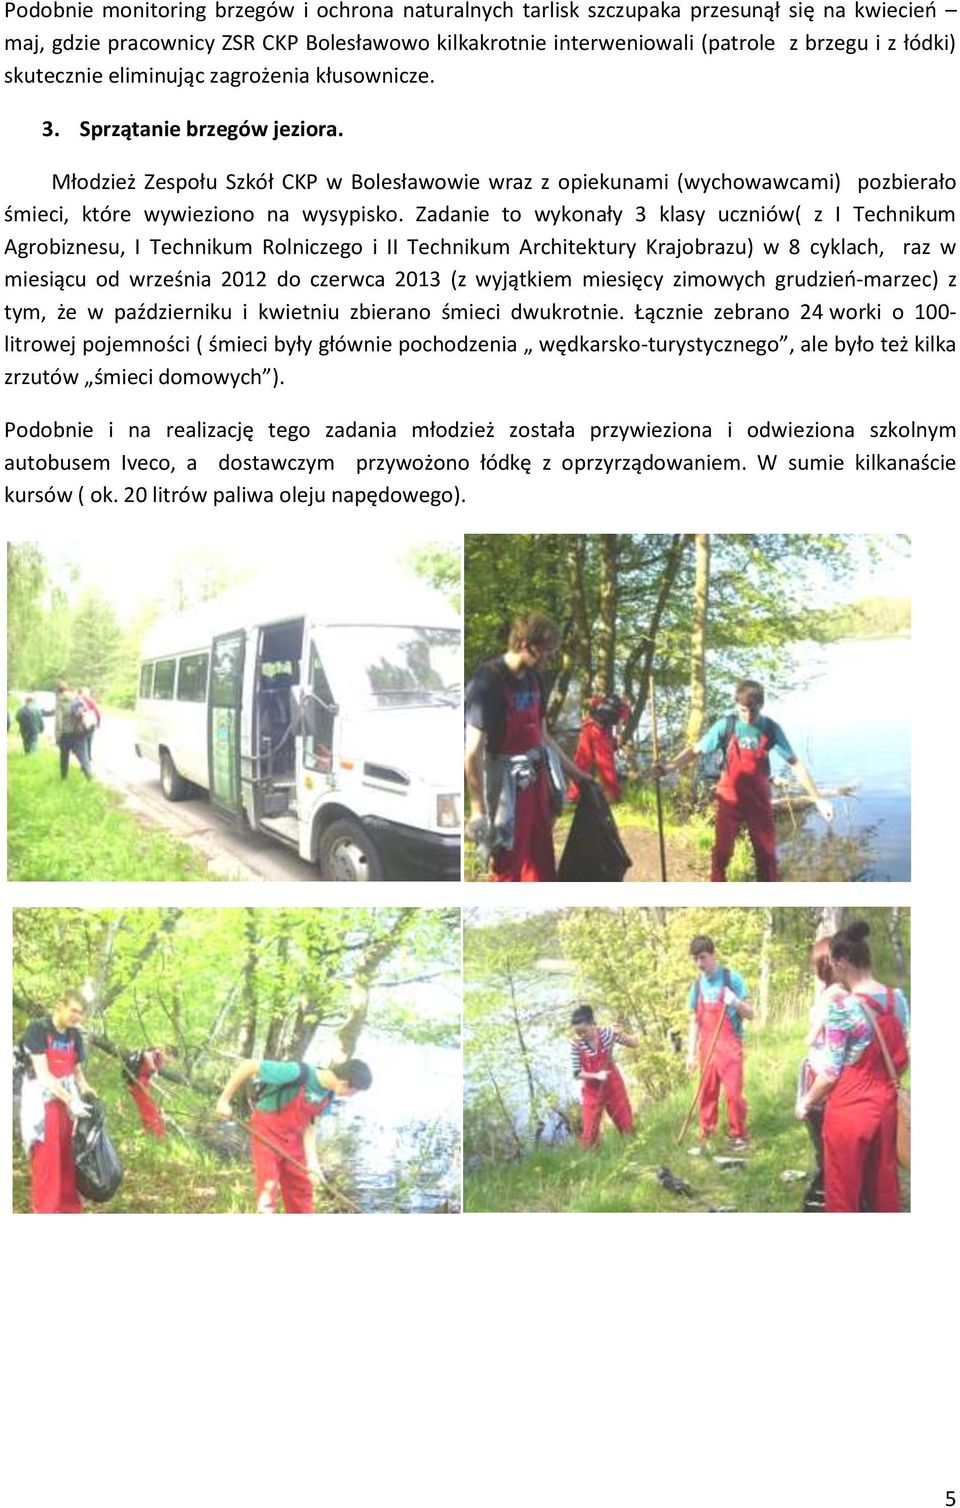 Młodzież Zespołu Szkół CKP w Bolesławowie wraz z opiekunami (wychowawcami) pozbierało śmieci, które wywieziono na wysypisko.